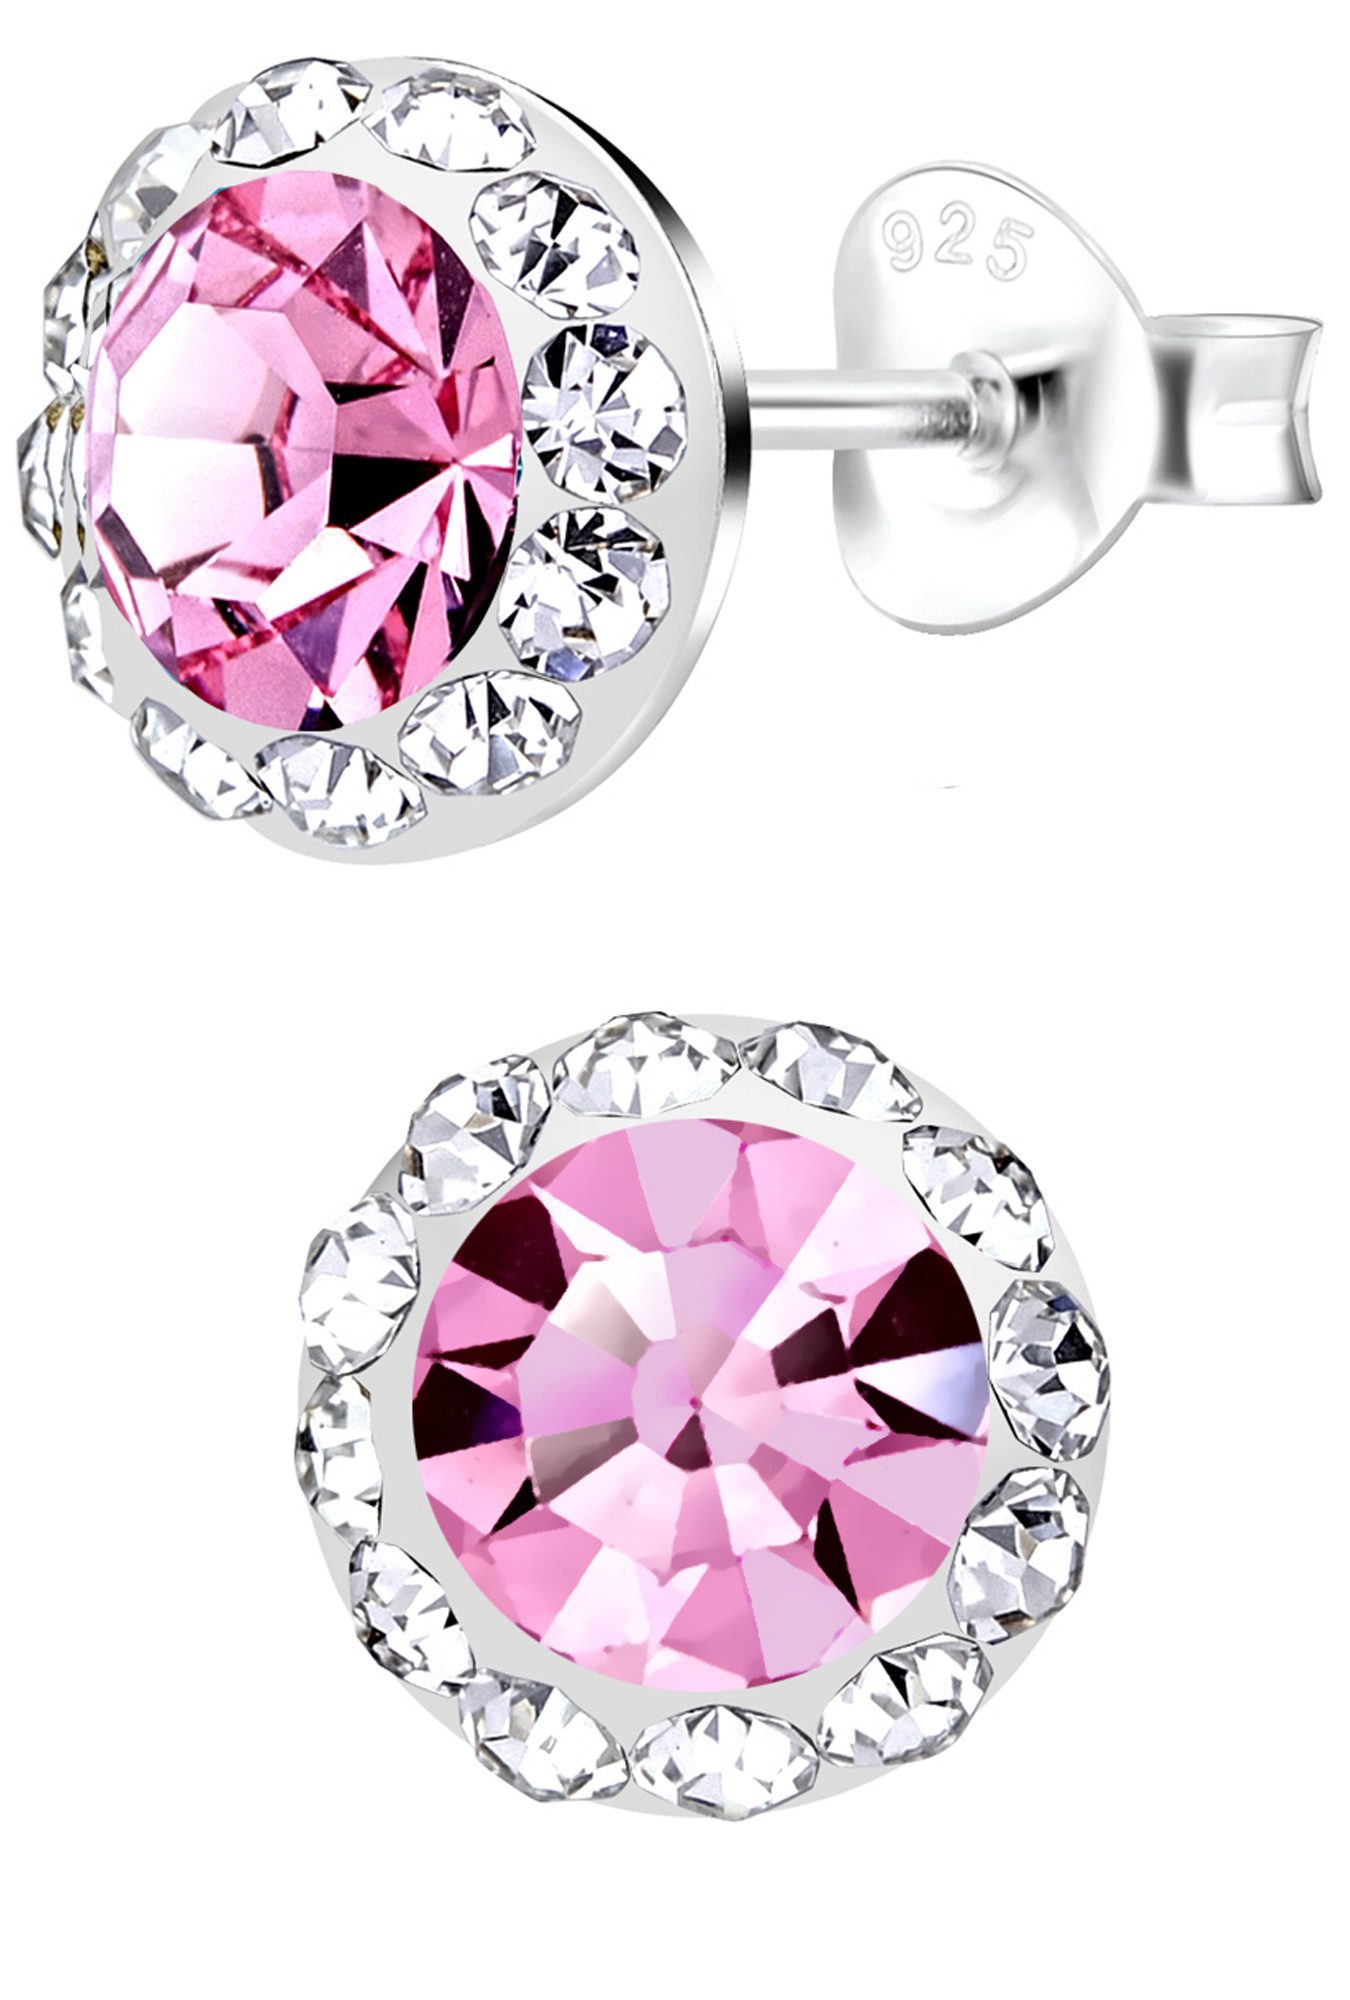 Limana Paar Ohrstecker Damen Mädchen runde Ohrringe 8mm 925 Silber pink Kristalle, Damenohrringe für jeden Tag Geschenk Geschenkidee